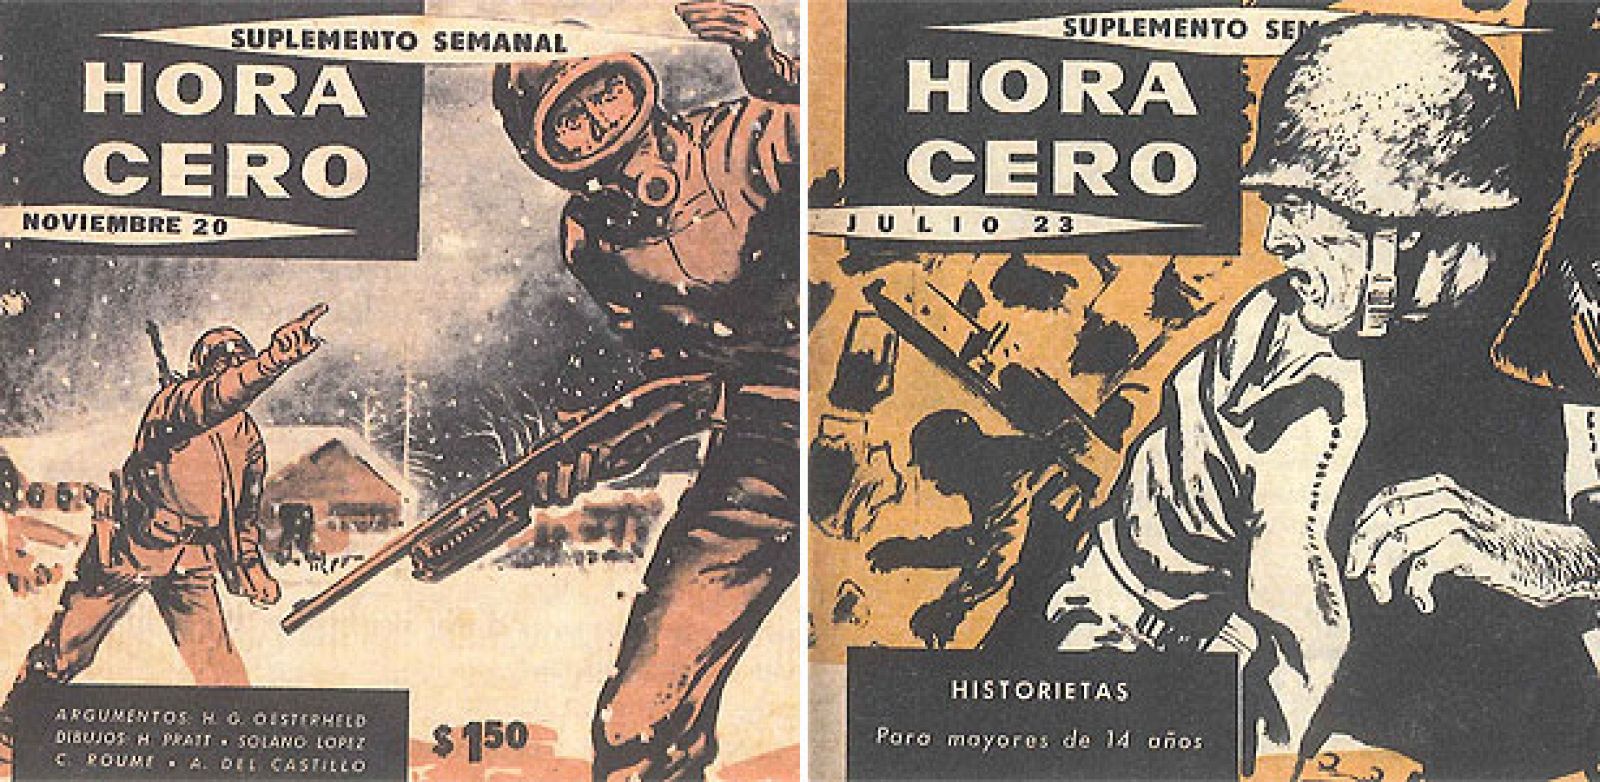 Fragmentos de portadas de 'Hora cero', donde se publicó 'El eternauta', de Oesterheld y Solano López